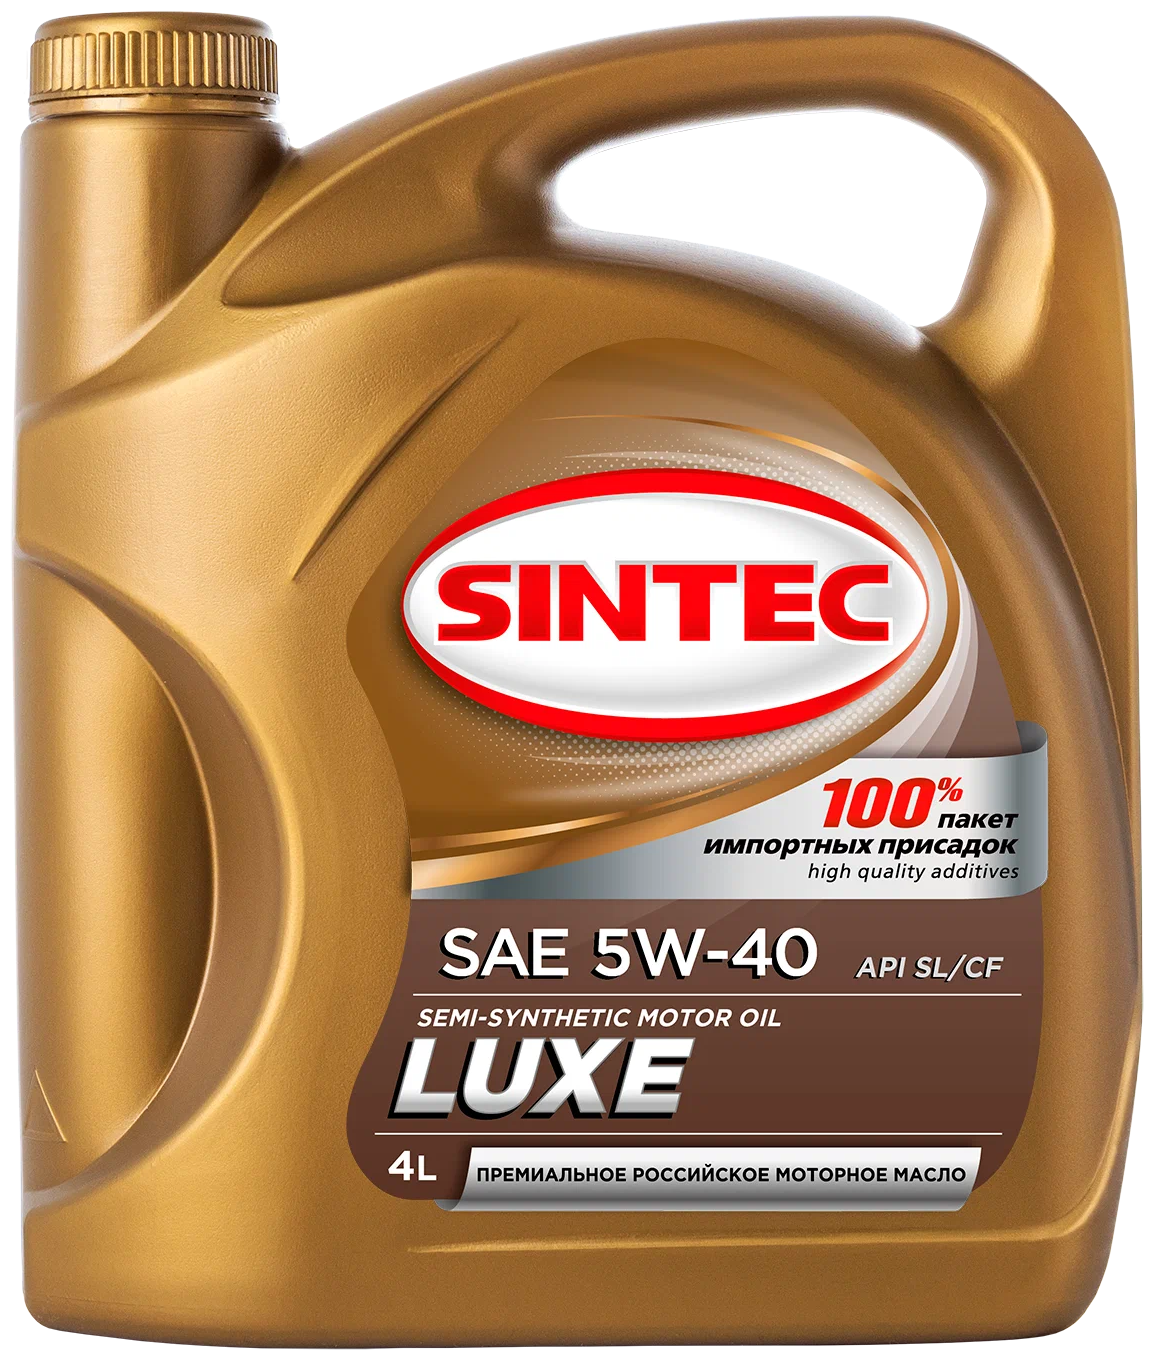 Полусинтетическое моторное масло SINTEC LUXE 5W-40, 4 л, 4 л1 шт